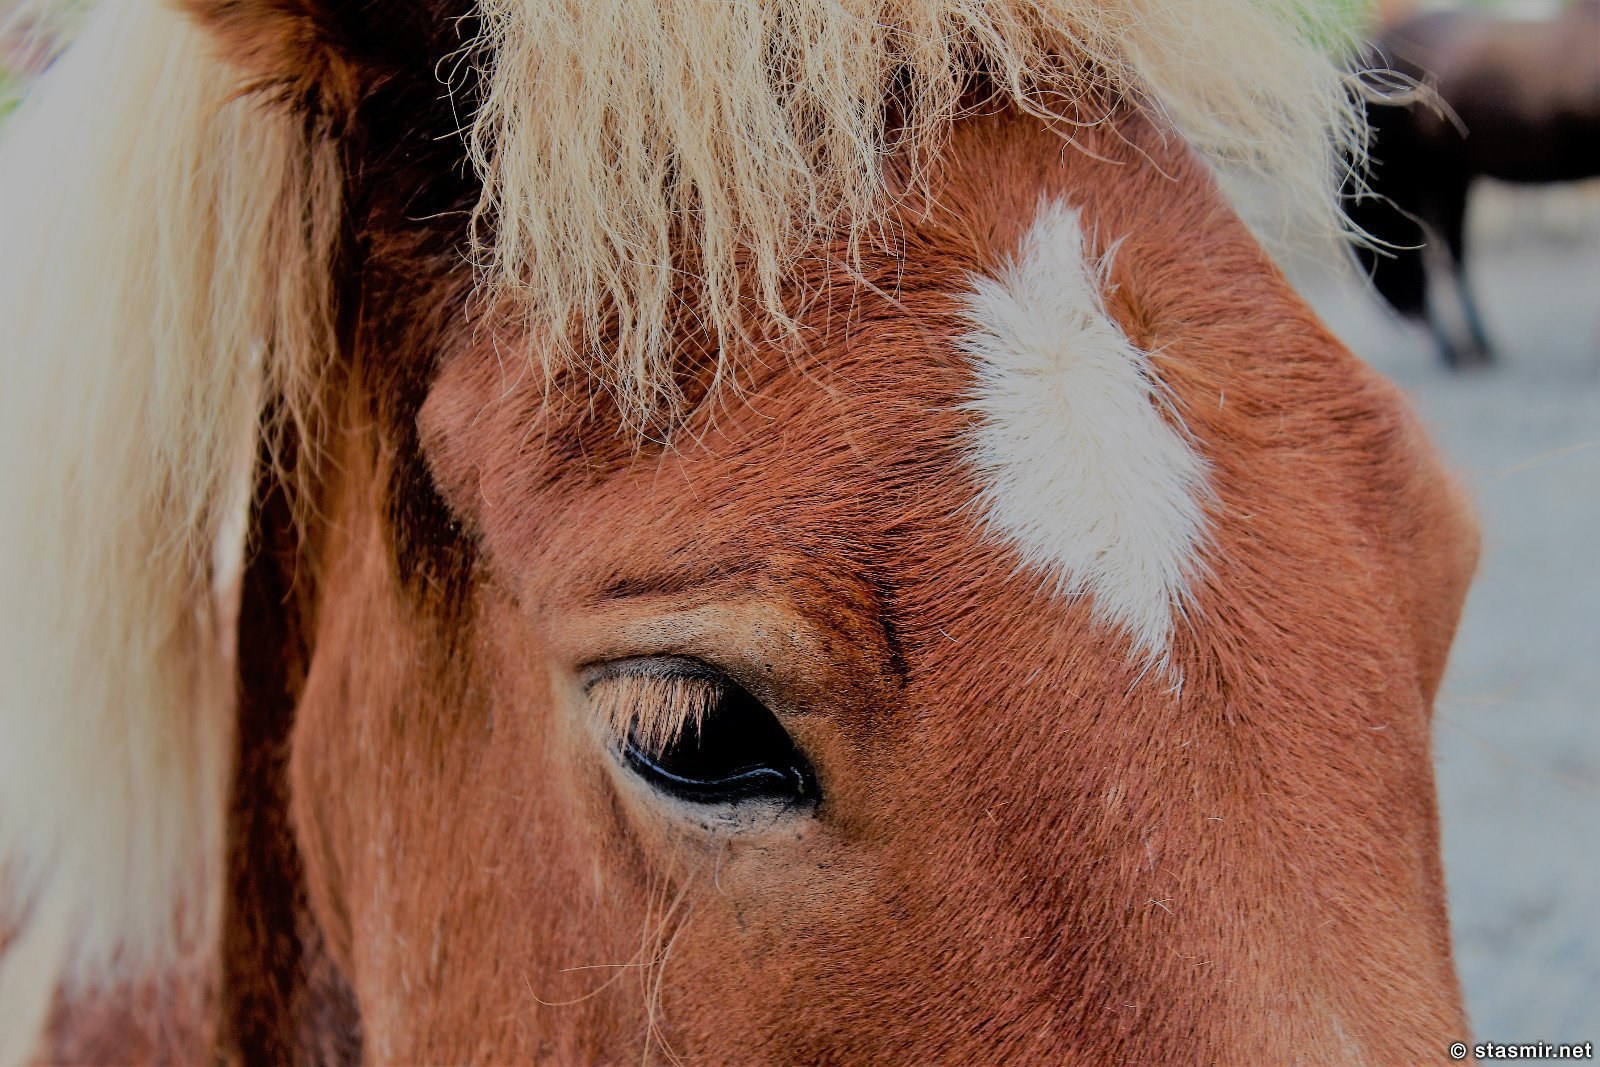 глаза исландской лошадки, фото Стасмир, Photo Stasmir